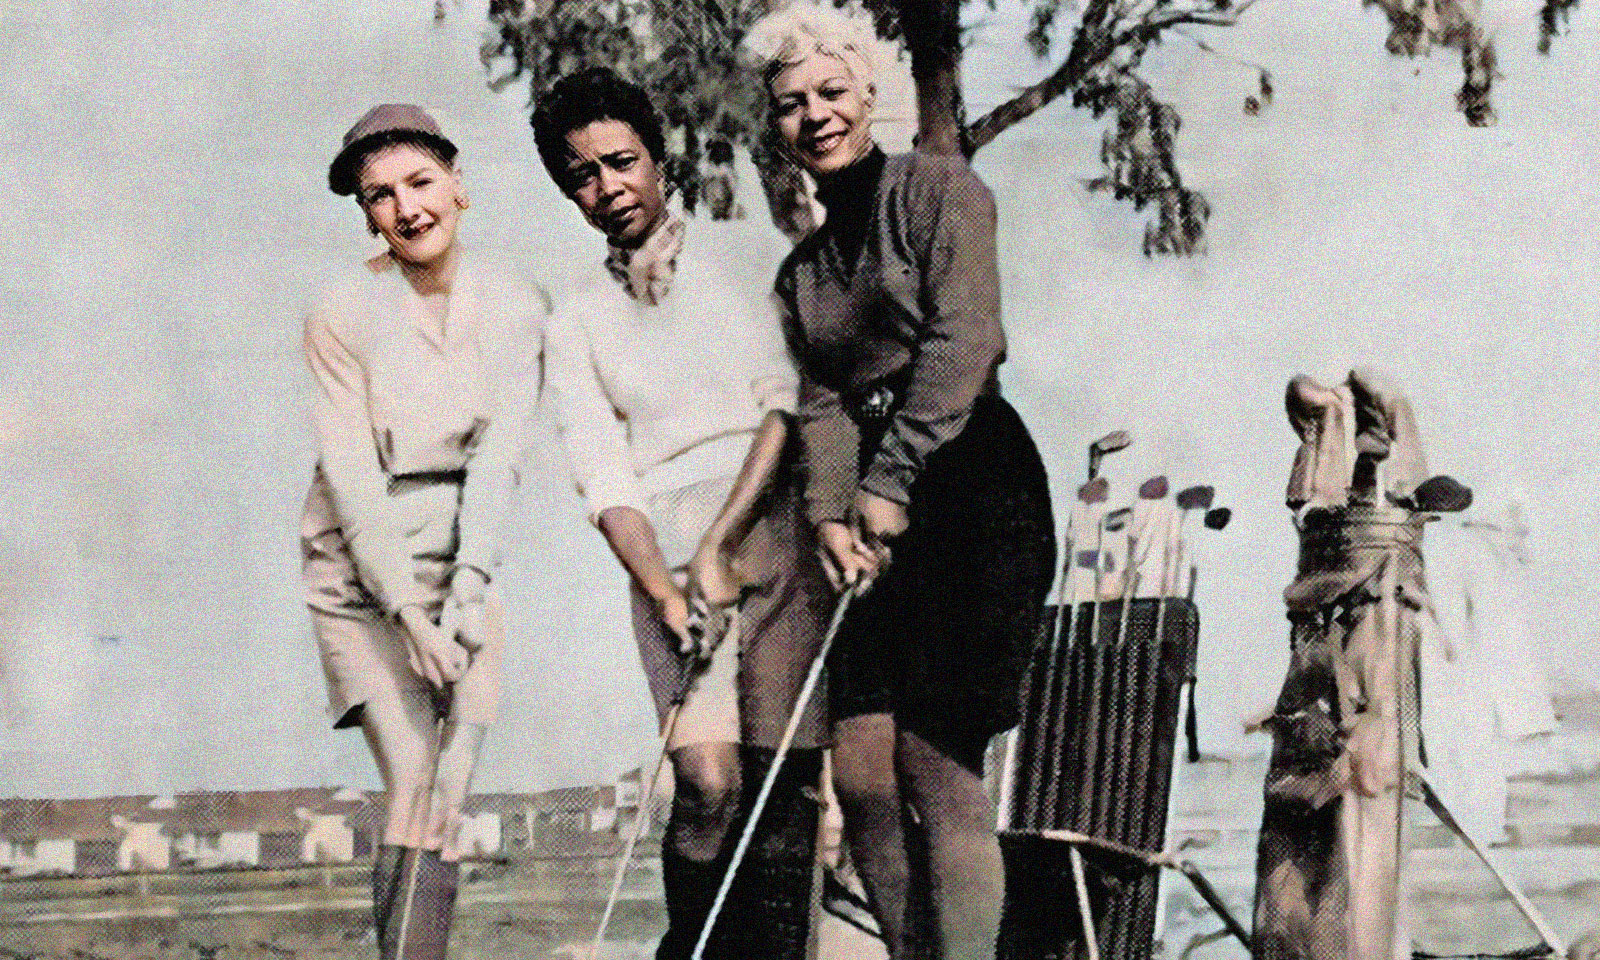 USGA Donates $1M to Restore LA's Maggie Hathaway Golf Course